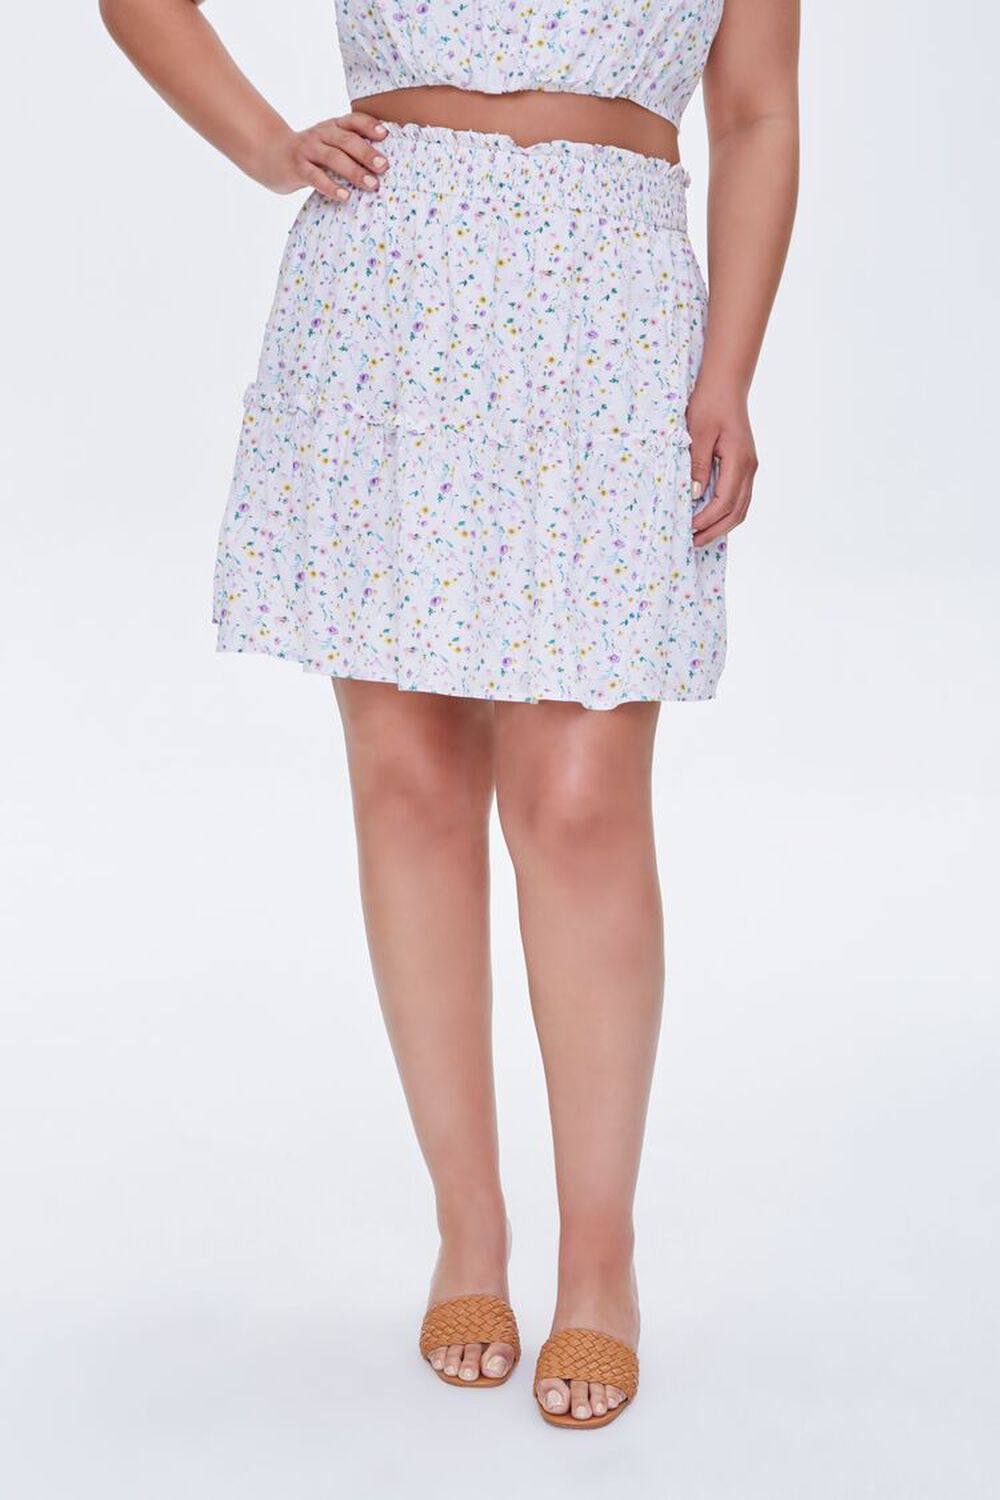 WHITE/MULTI Plus Size Floral Print Mini Skirt, image 2